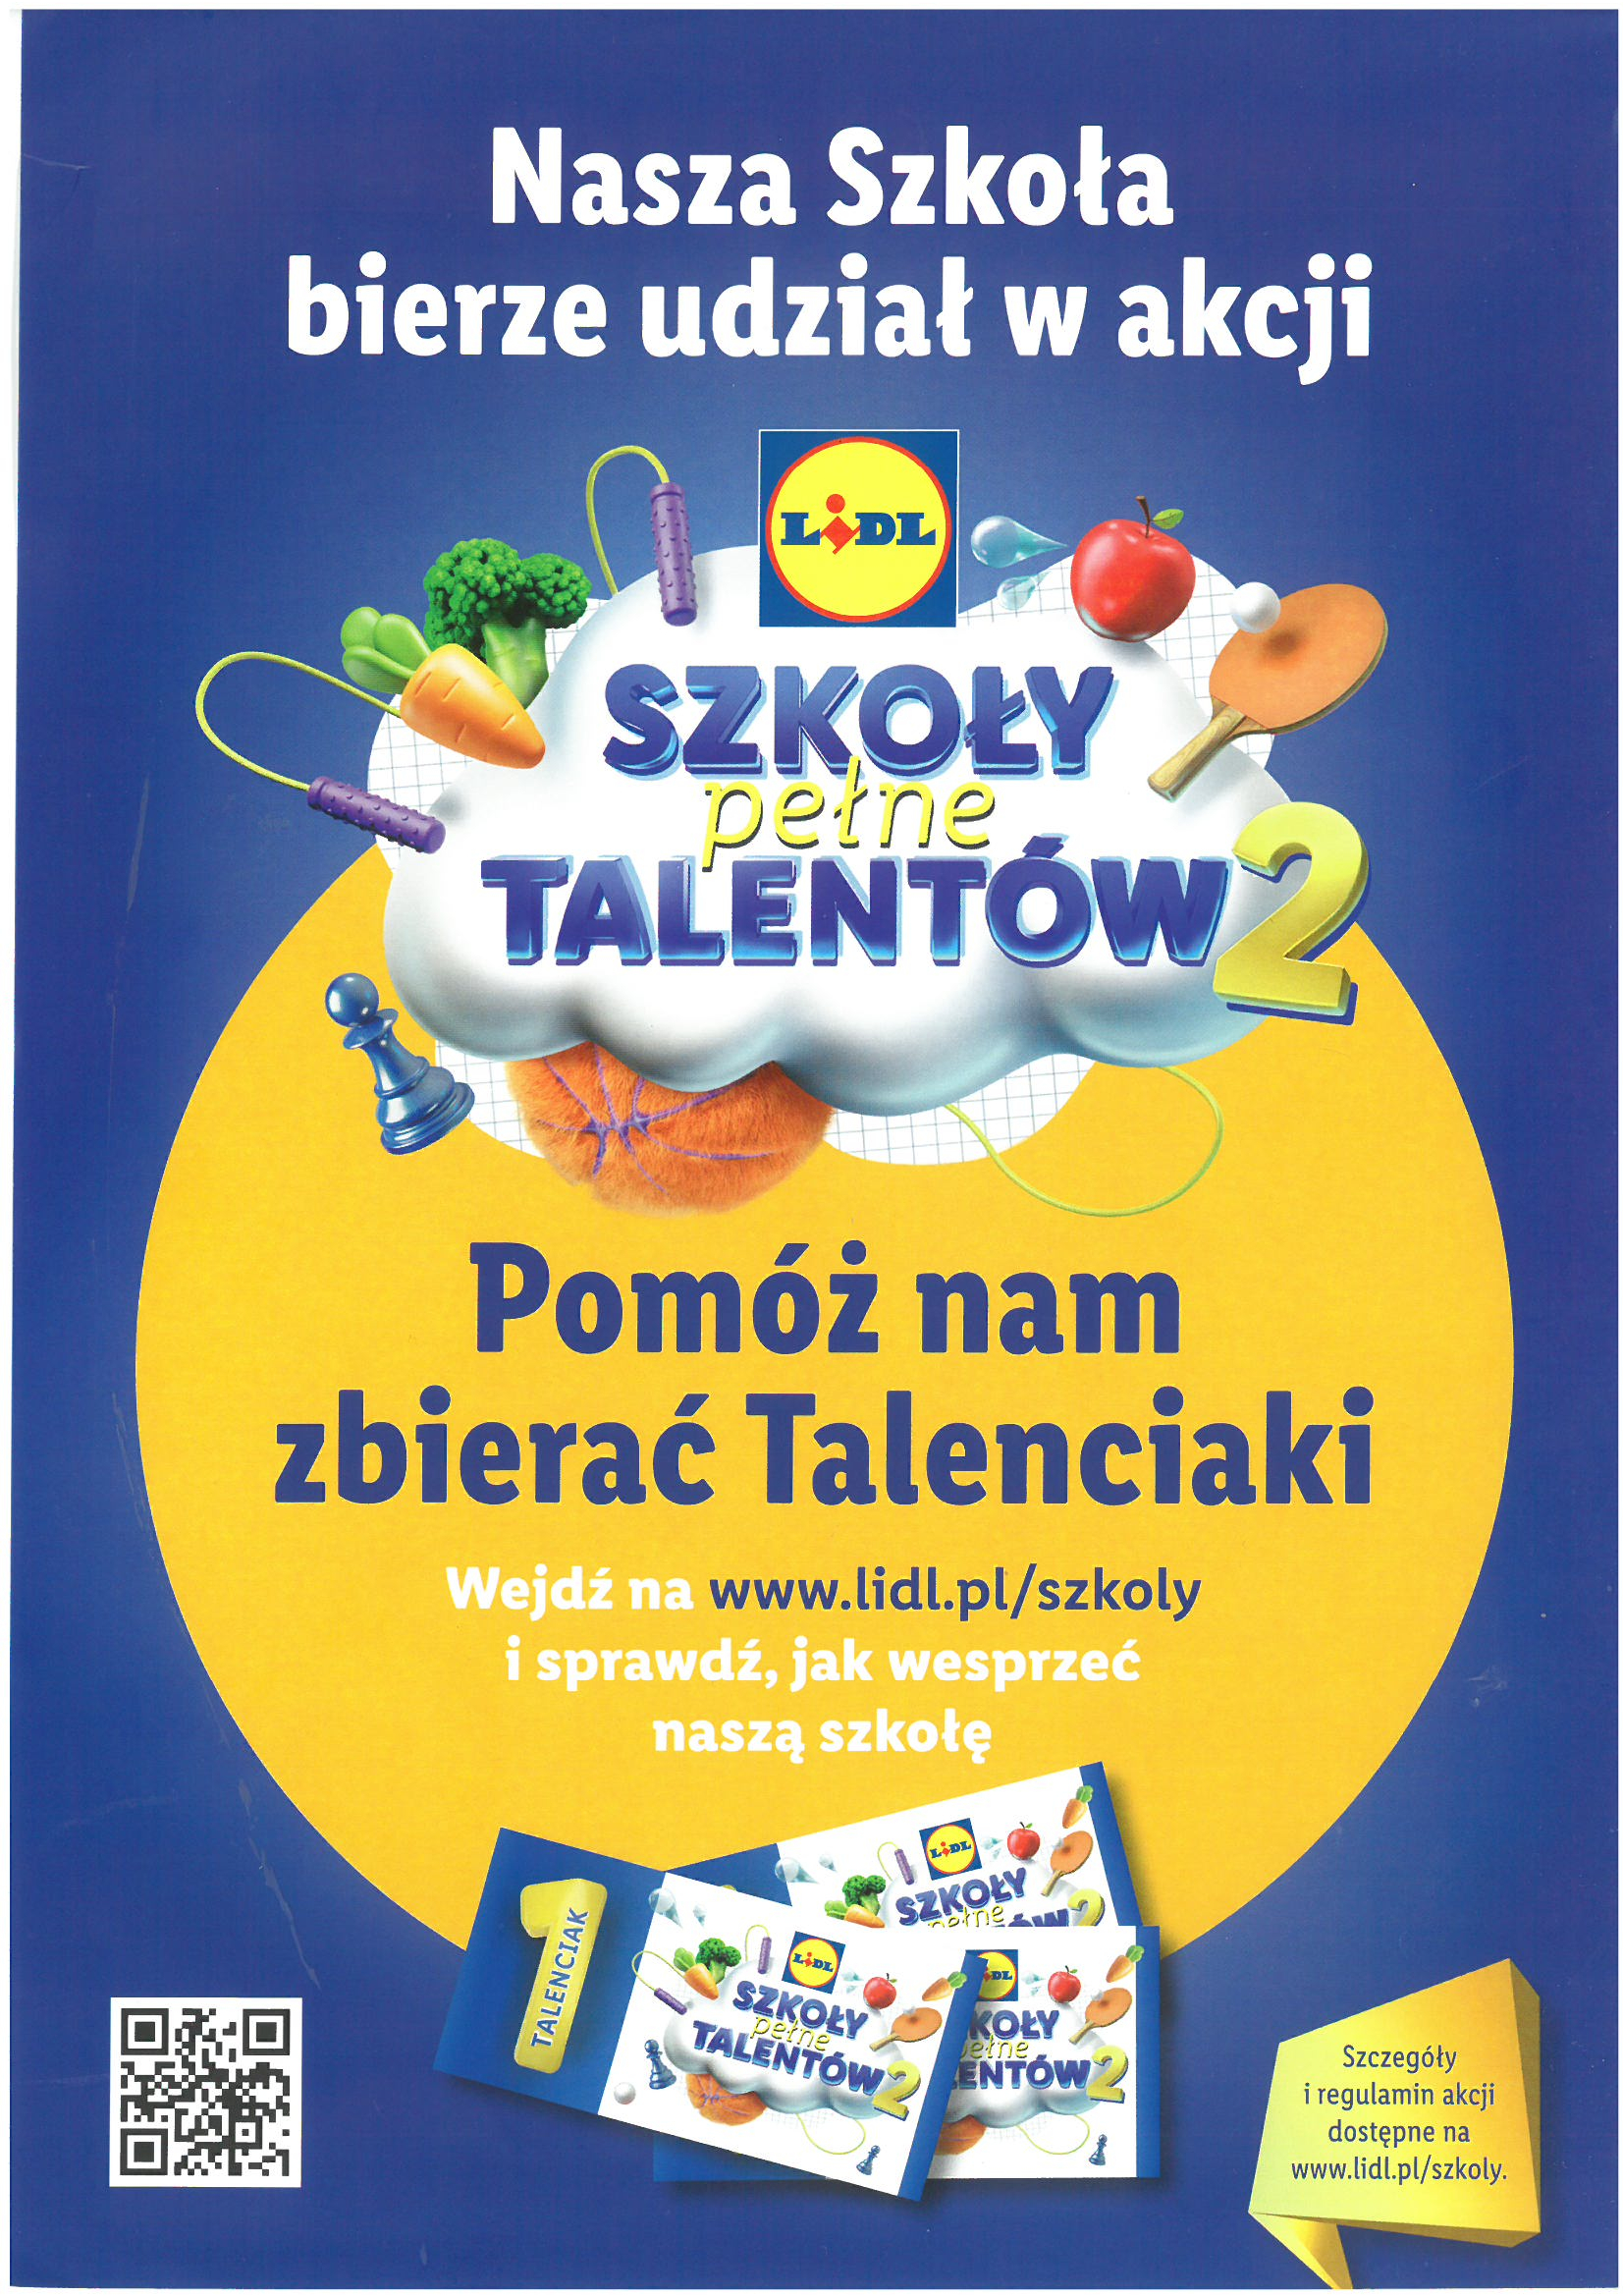 Nasza szkoła bierze udział w akcji szkoła pełna talentów. Pomóż nam zbierać talenciaki. wejdź na www.lidl.pl/szkoły i sprawdź, jak wesprzeć naszą szkołę.